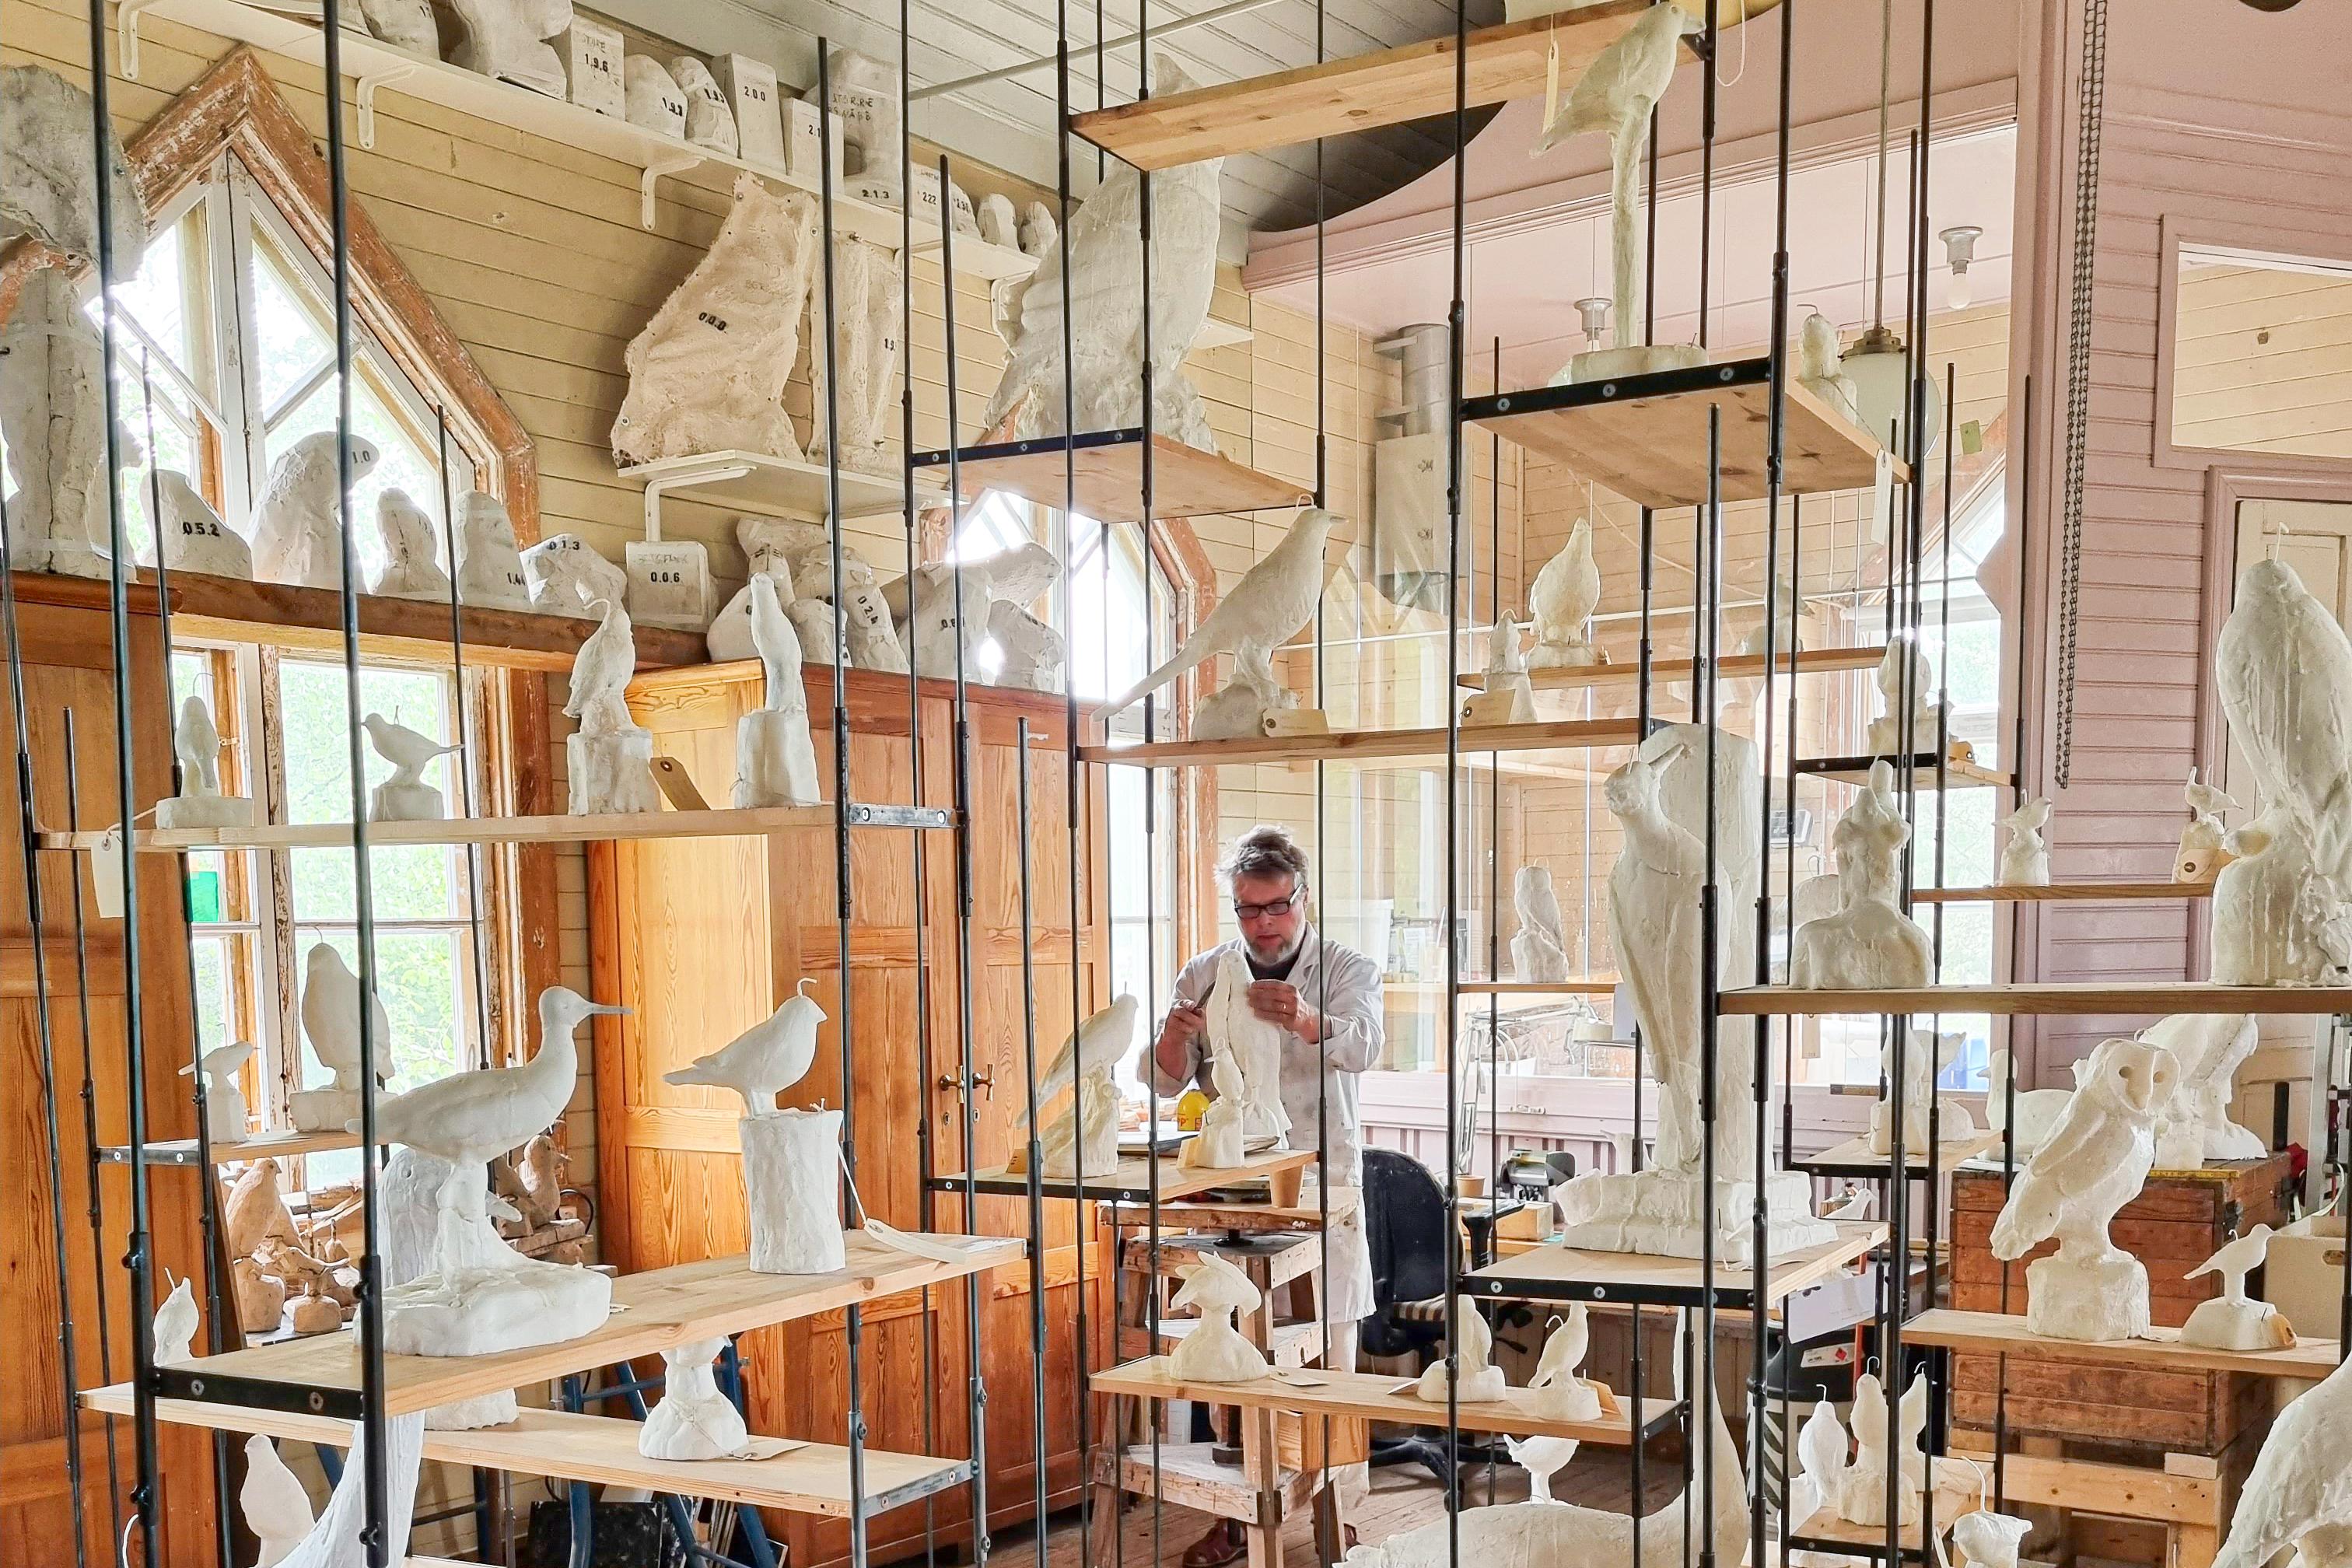 Konstnären Fredrik Strid i sin ateljé i norra Uppland där han har skapat stearinfåglarna, som är tillverkade i naturlig storlek och gjorda av stearin. Foto: Skissernas Museum